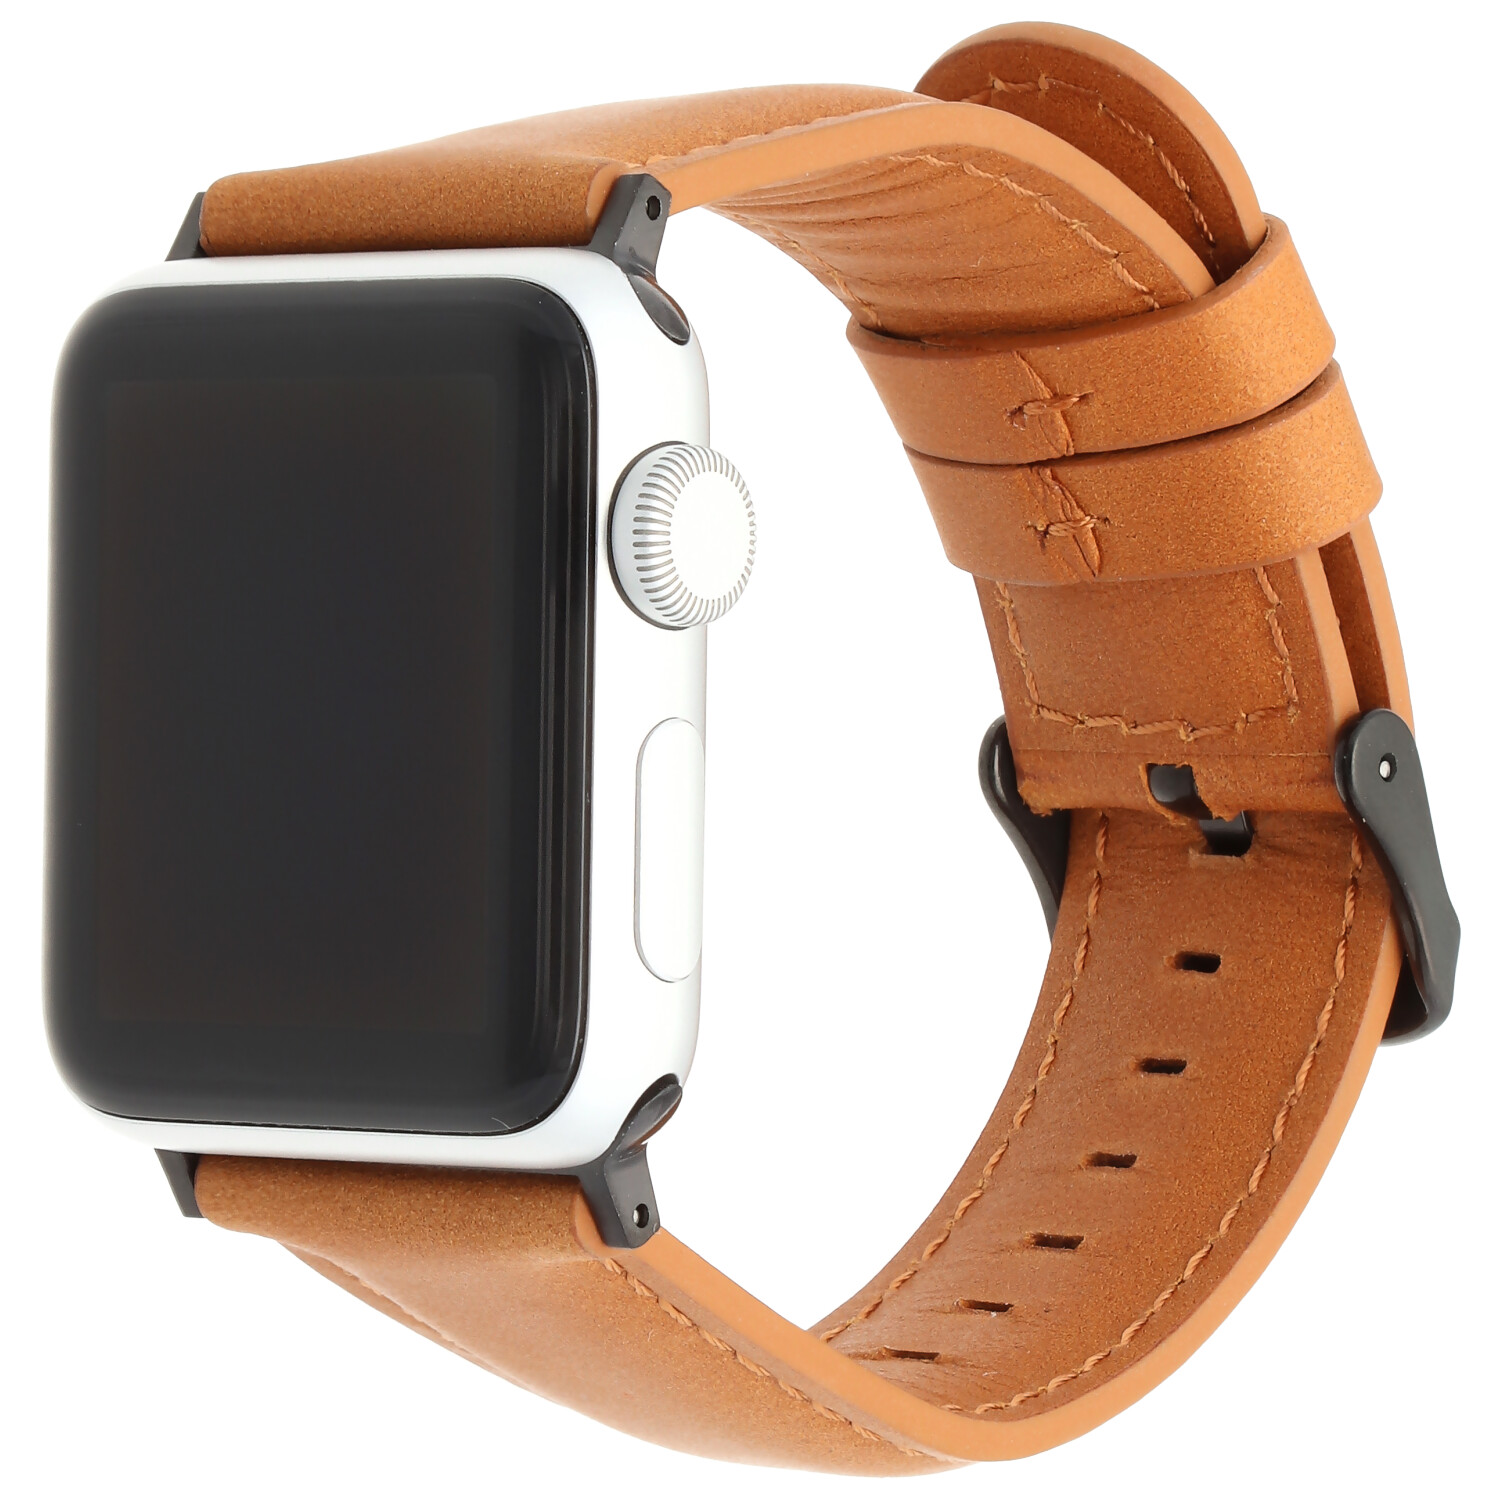 Cinturino in vera pelle per Apple Watch - marrone chiaro